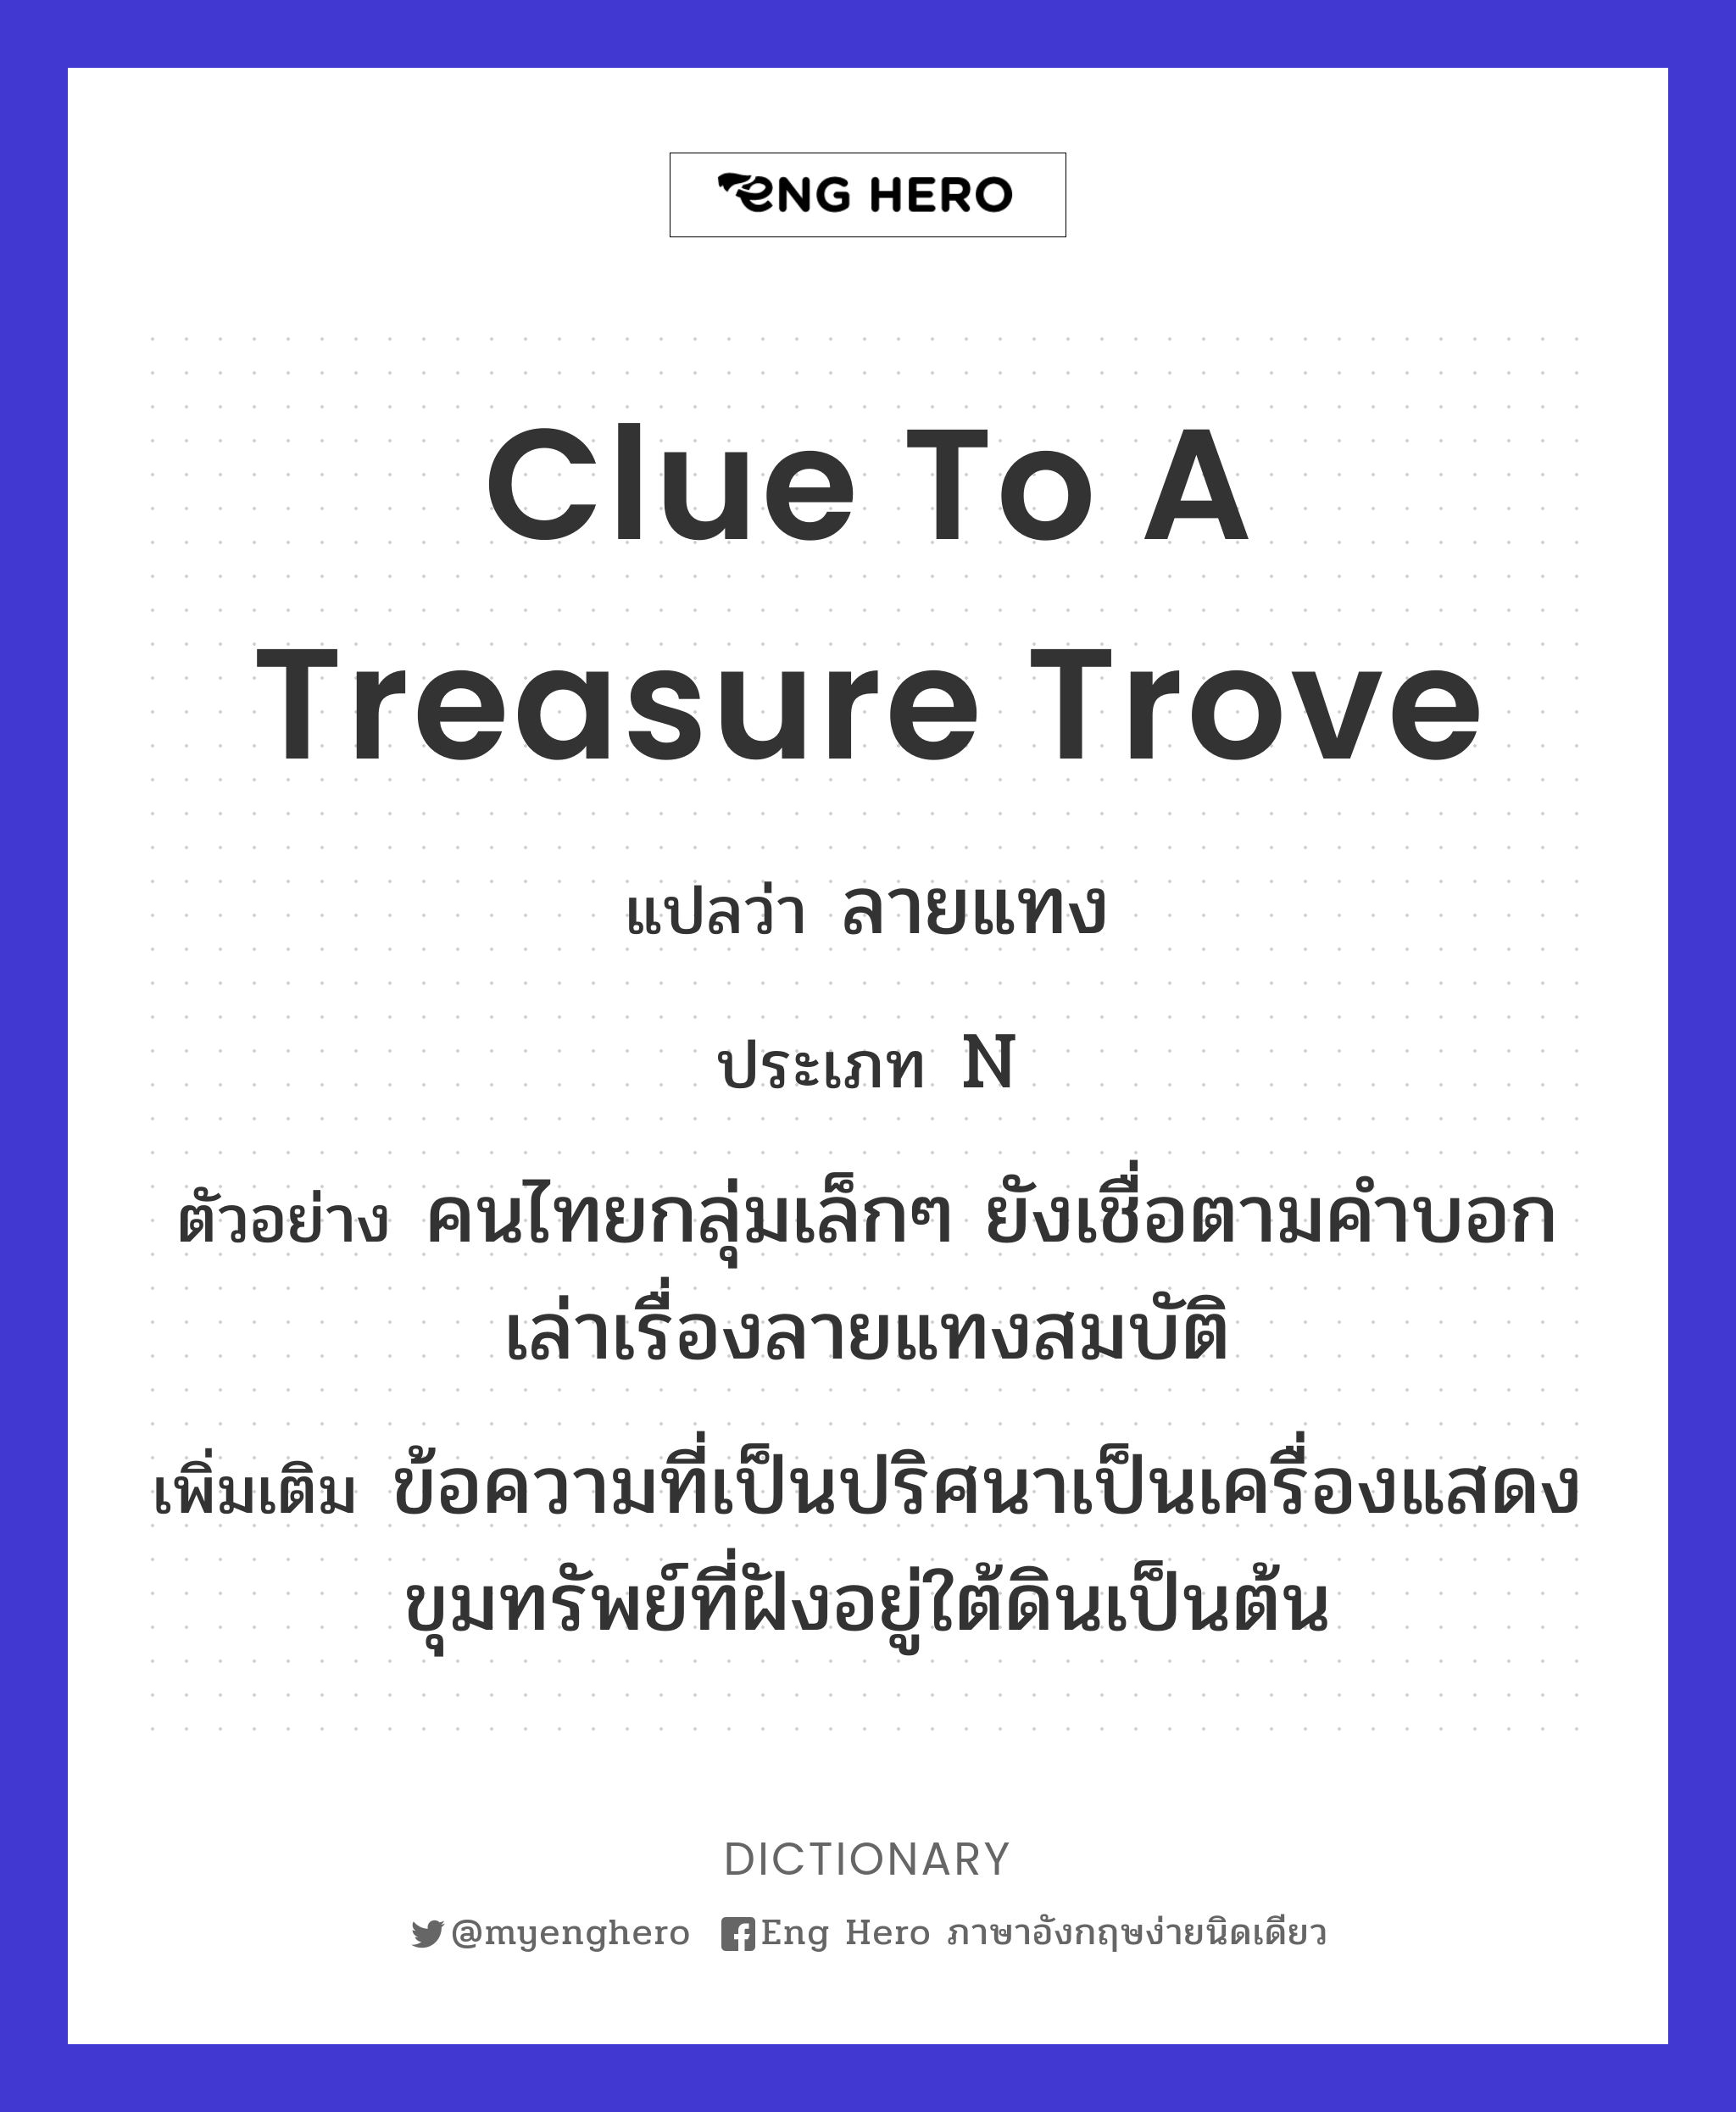 clue to a treasure trove